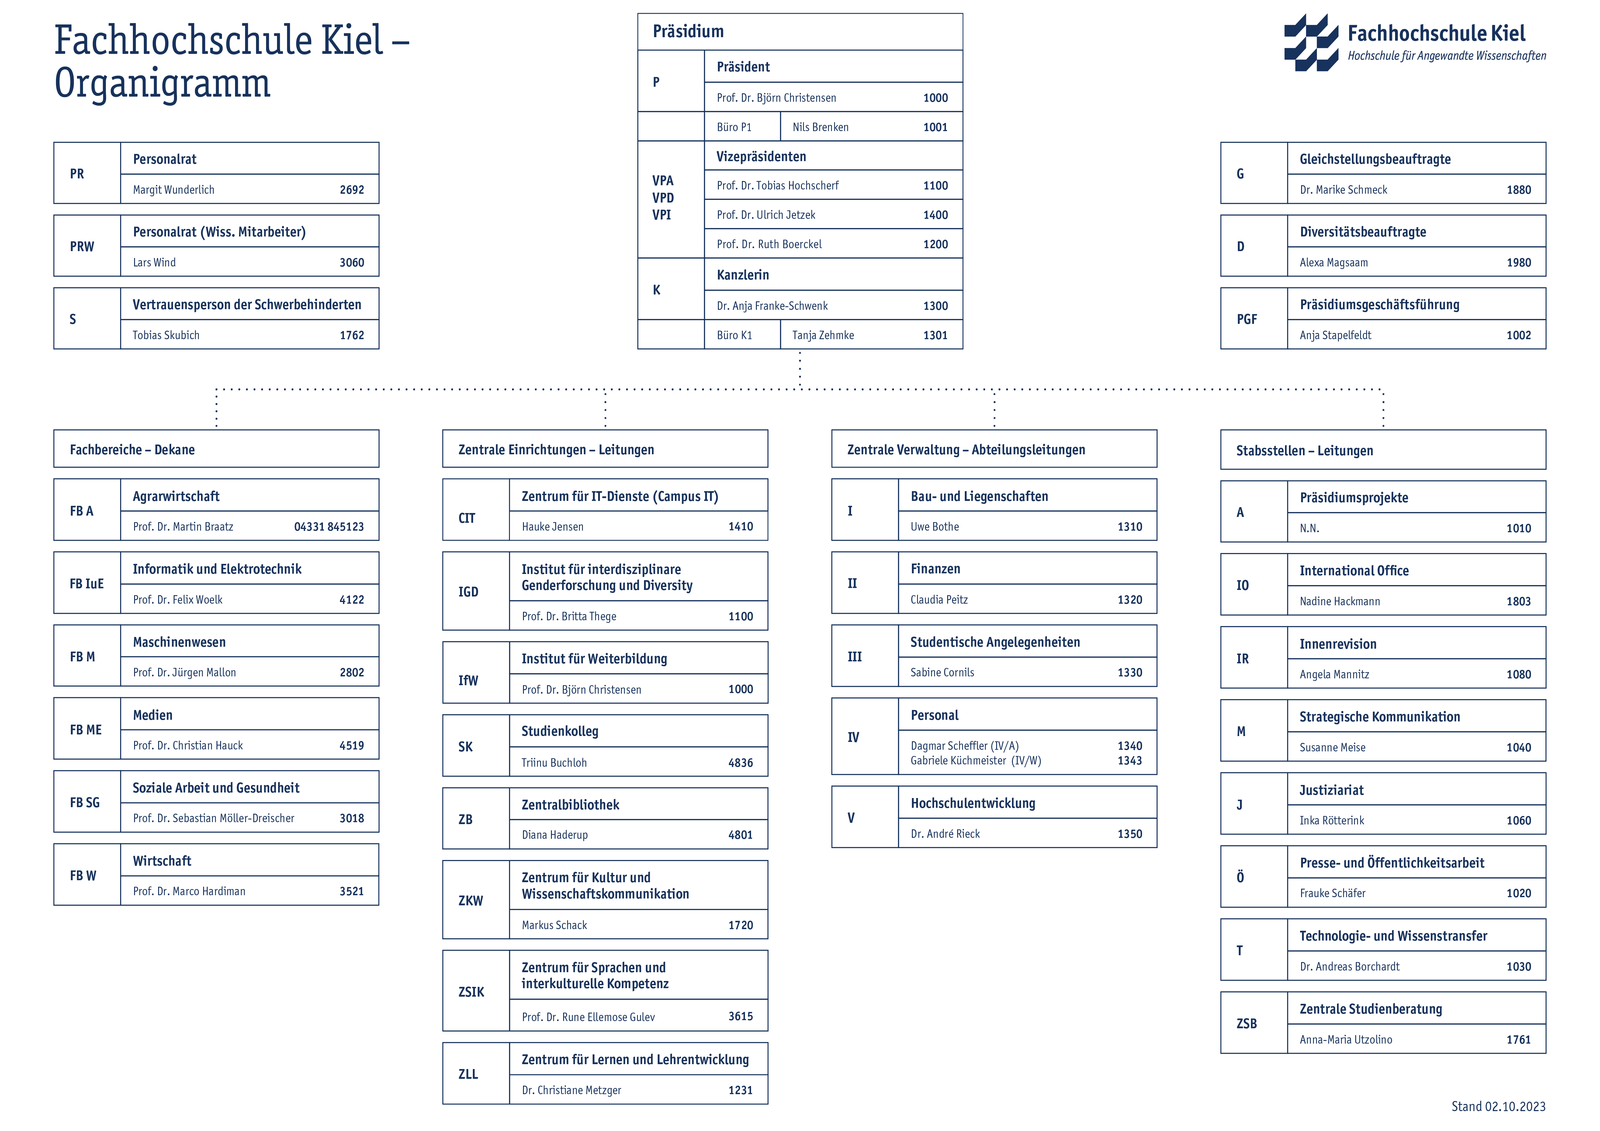 Organigramm der FH Kiel